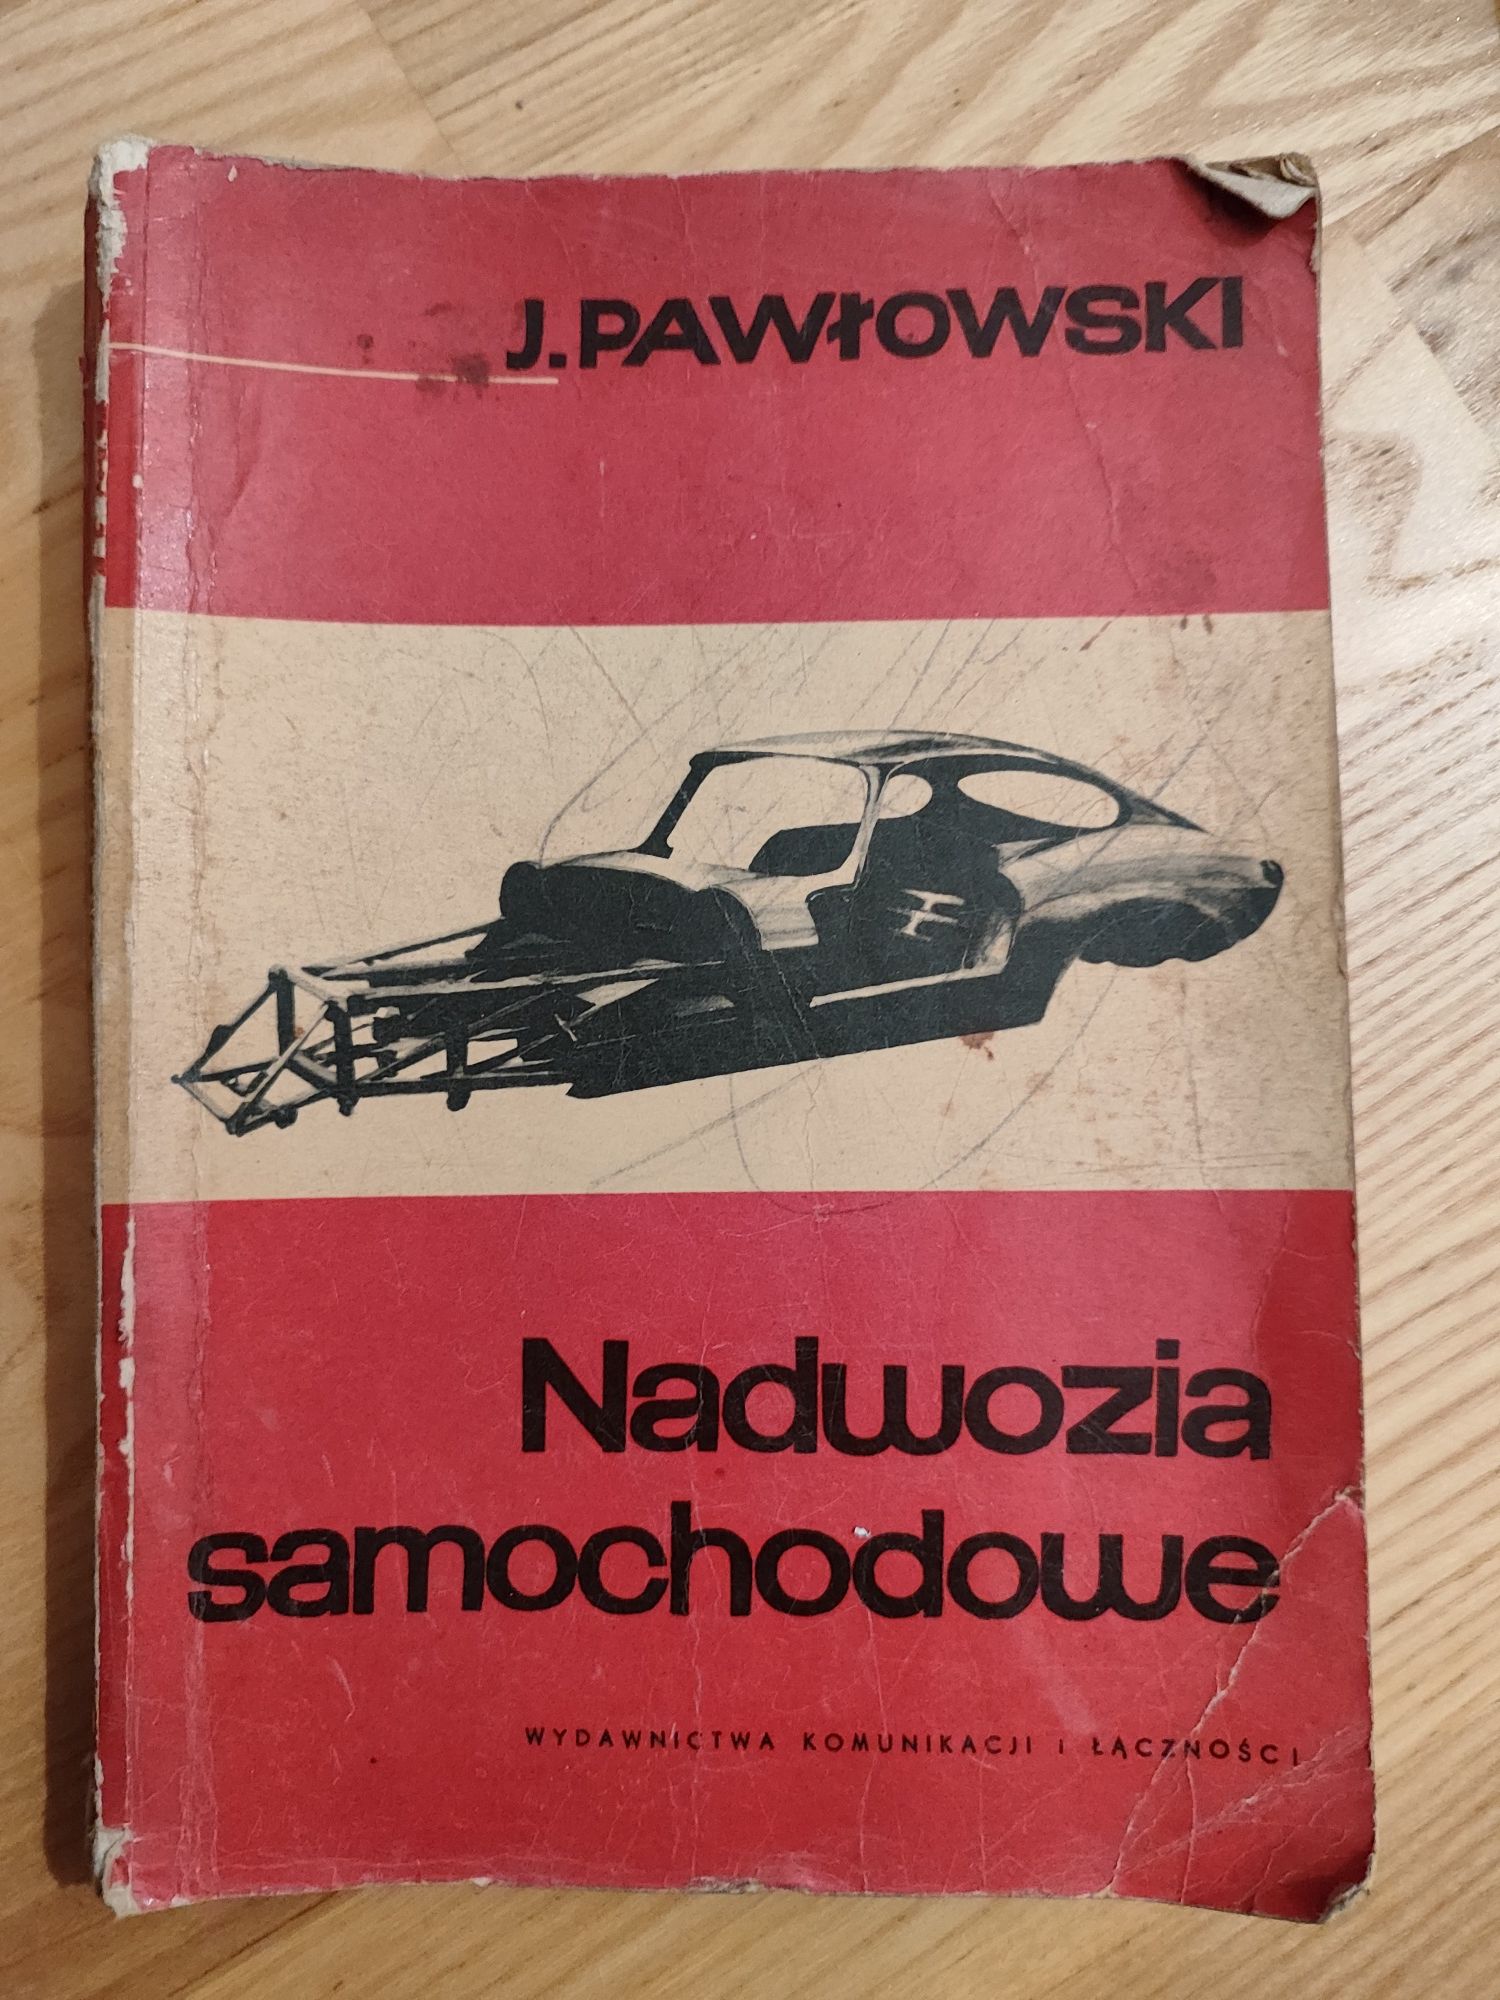 Nadwozia samochodowe Pawłowski książka